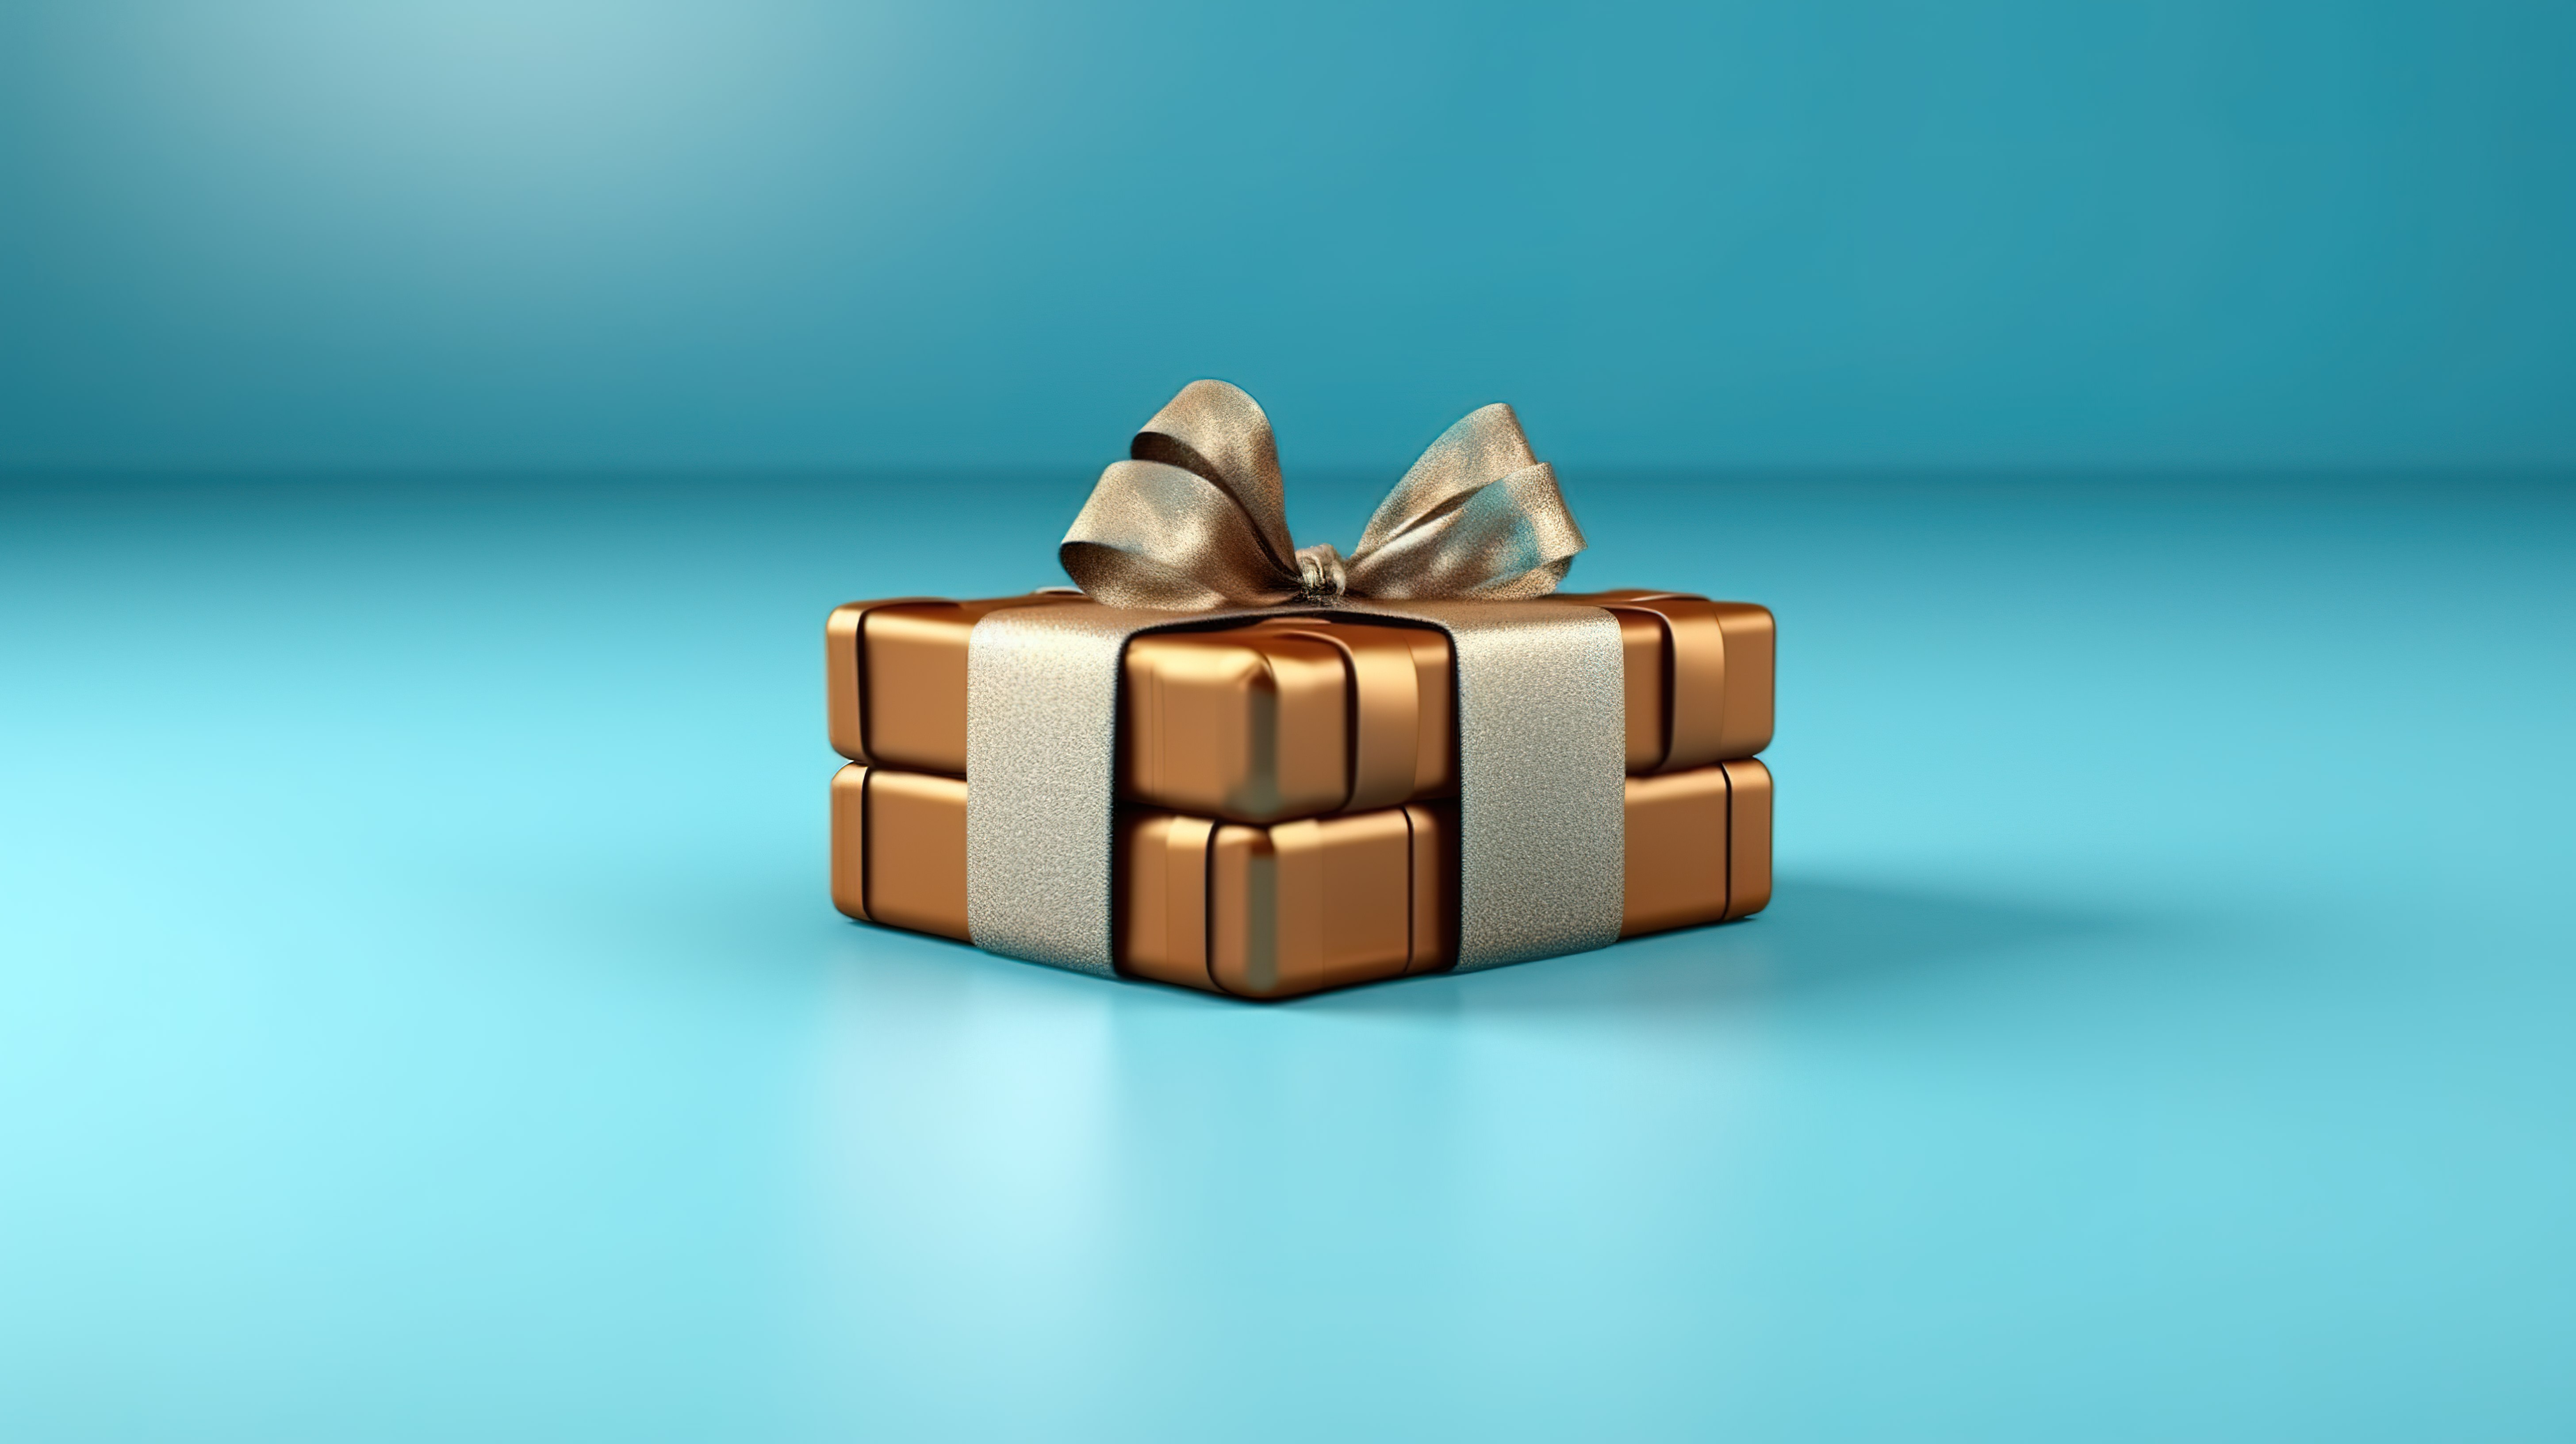 蓝色背景与棕色礼品包装的 3D 渲染图片